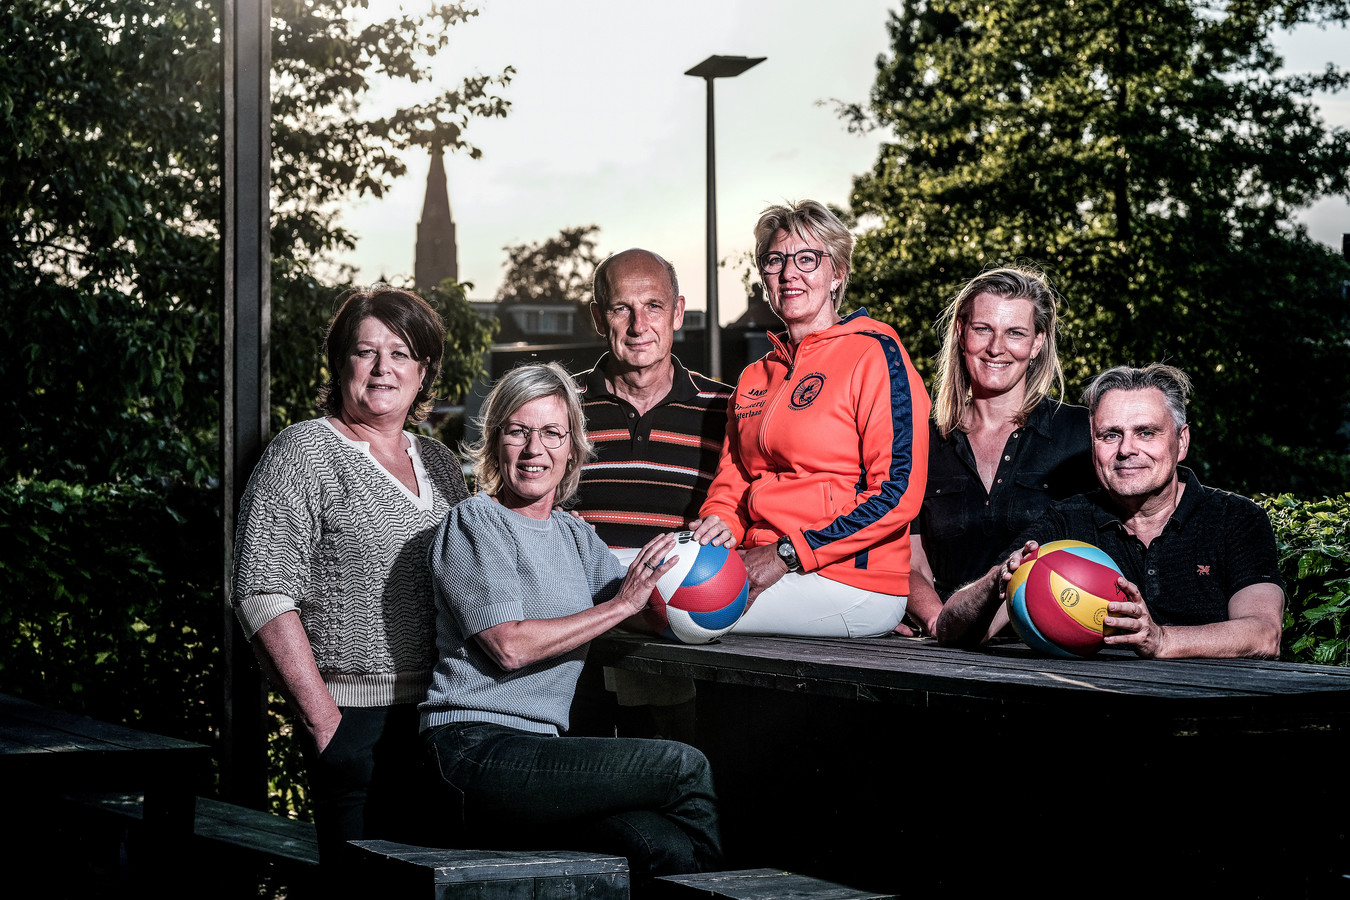 Vrijwilligers van volleybalclub Longa ‘59, vlnr: Claudia Klein Holkenborg, Wendy Knufing, Bart Manschot, Marian Hagen, Saskia Reinerink en Marcel van den Berg.